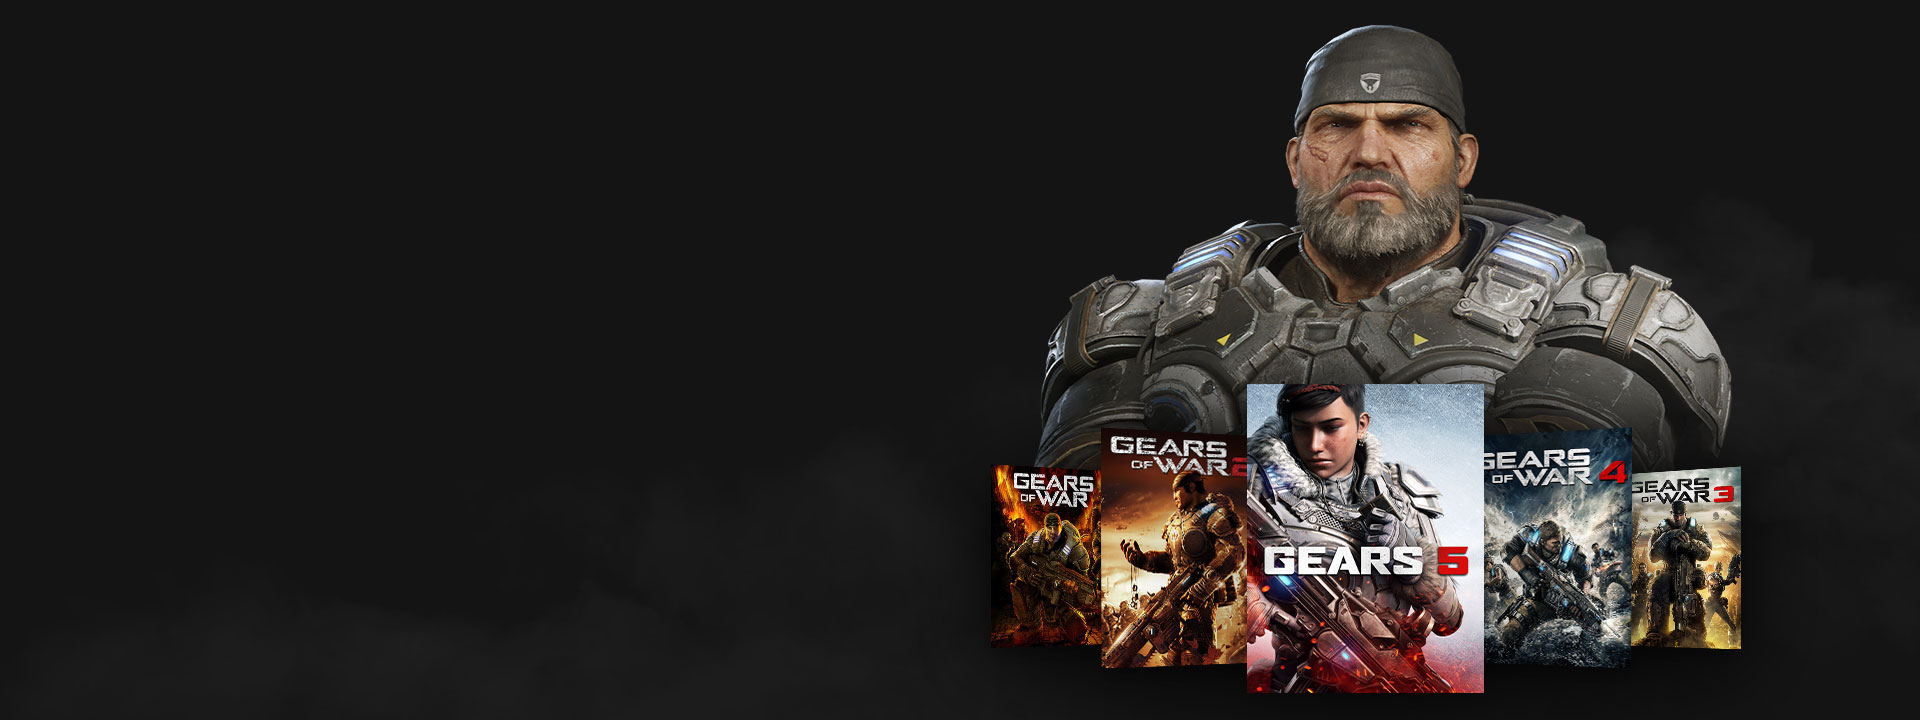 Xbox Game Pass-embléma, Marcus a Gears of War játékokkal pózol.